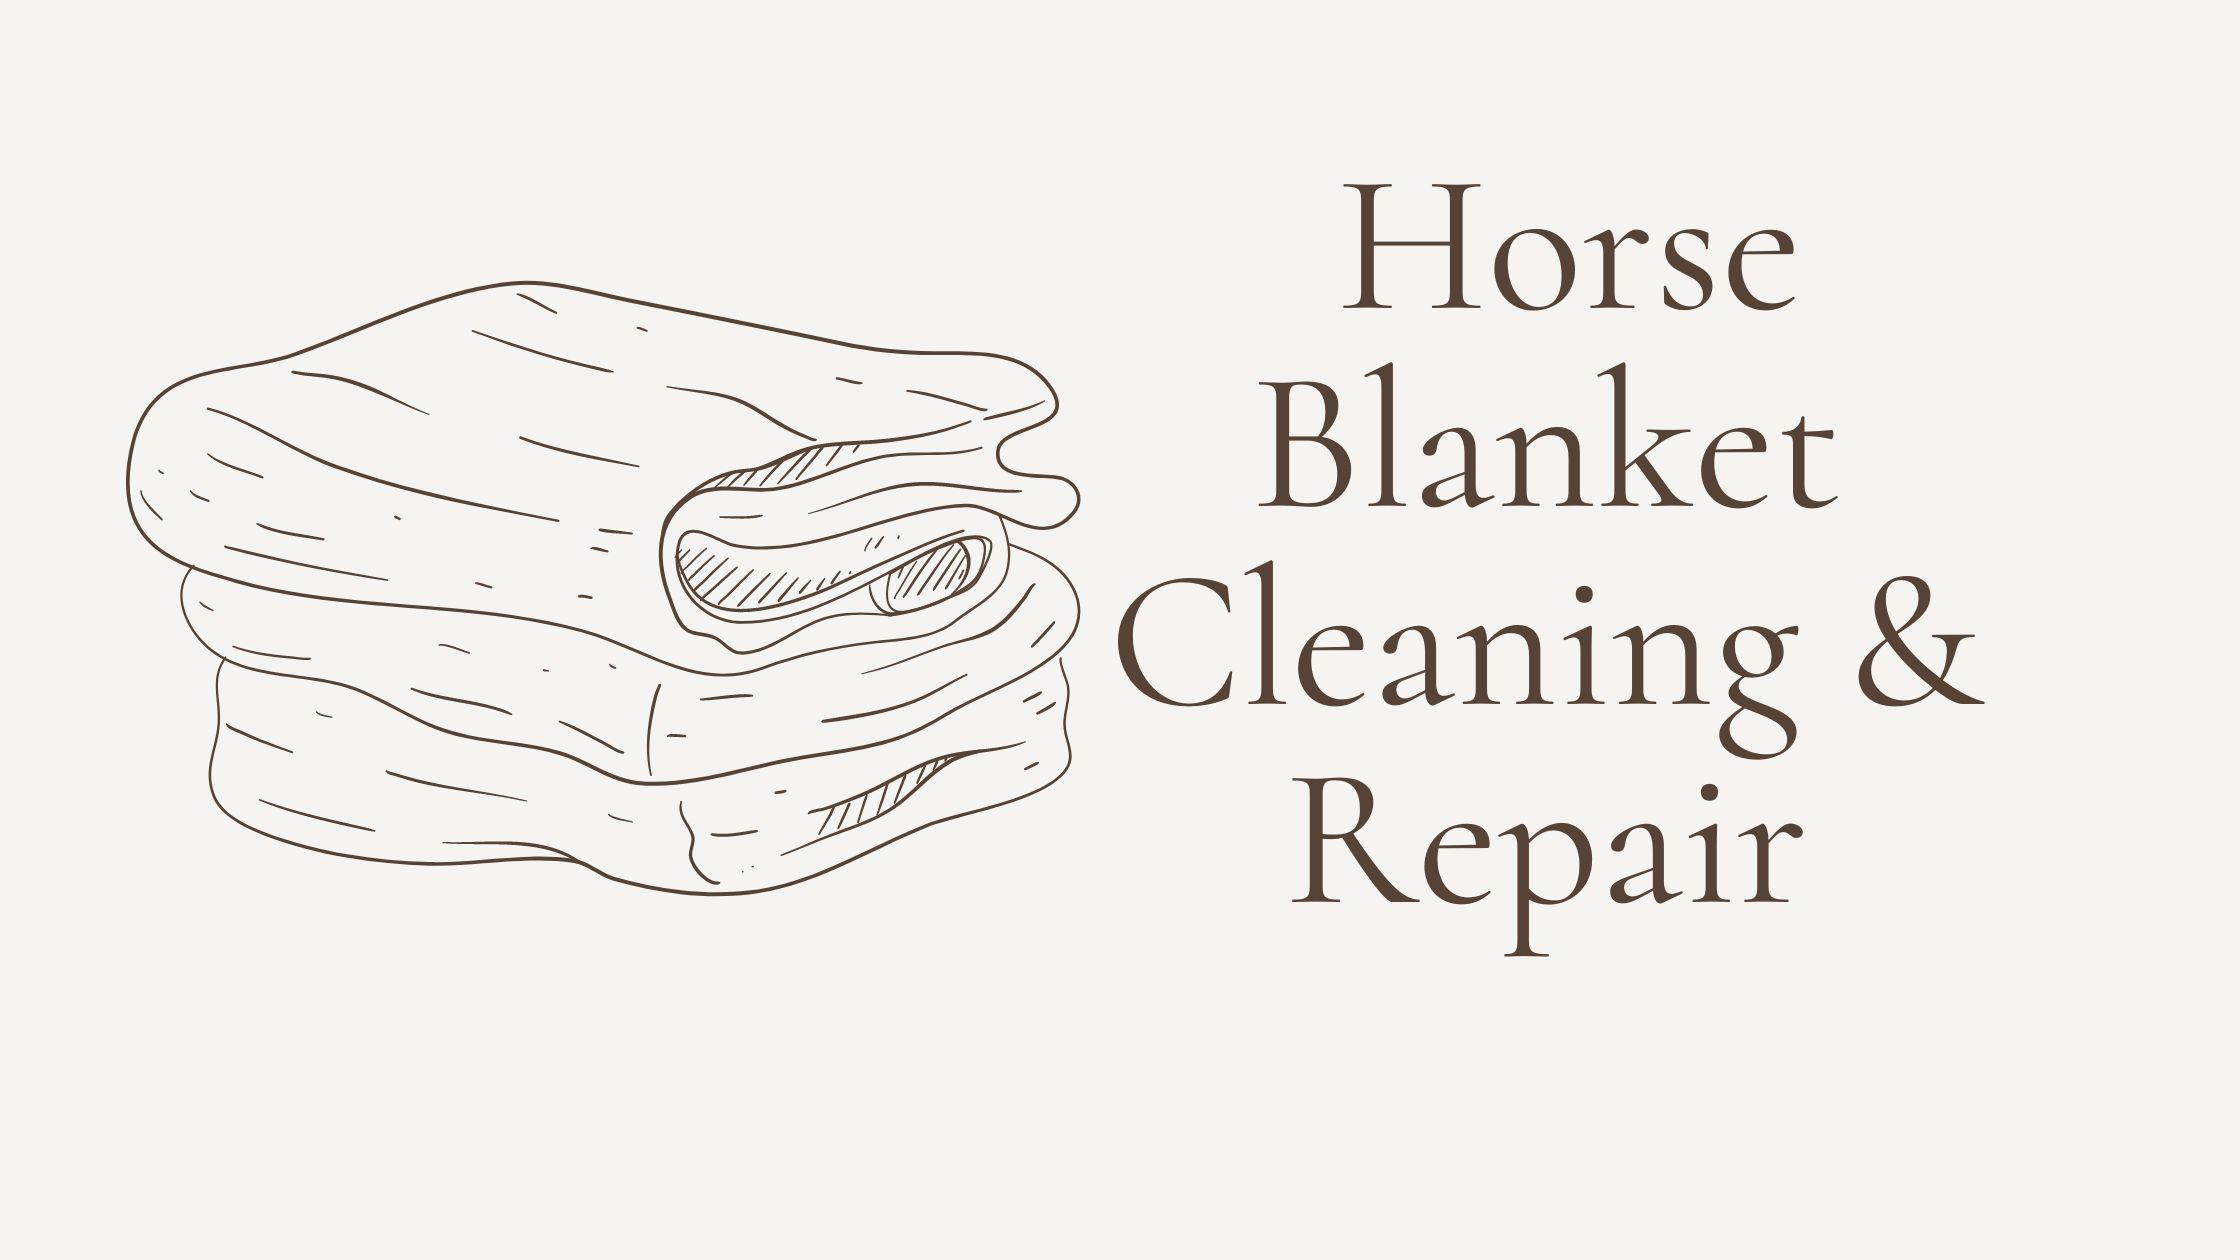 Horse Blanket Cleaning & Repair Image